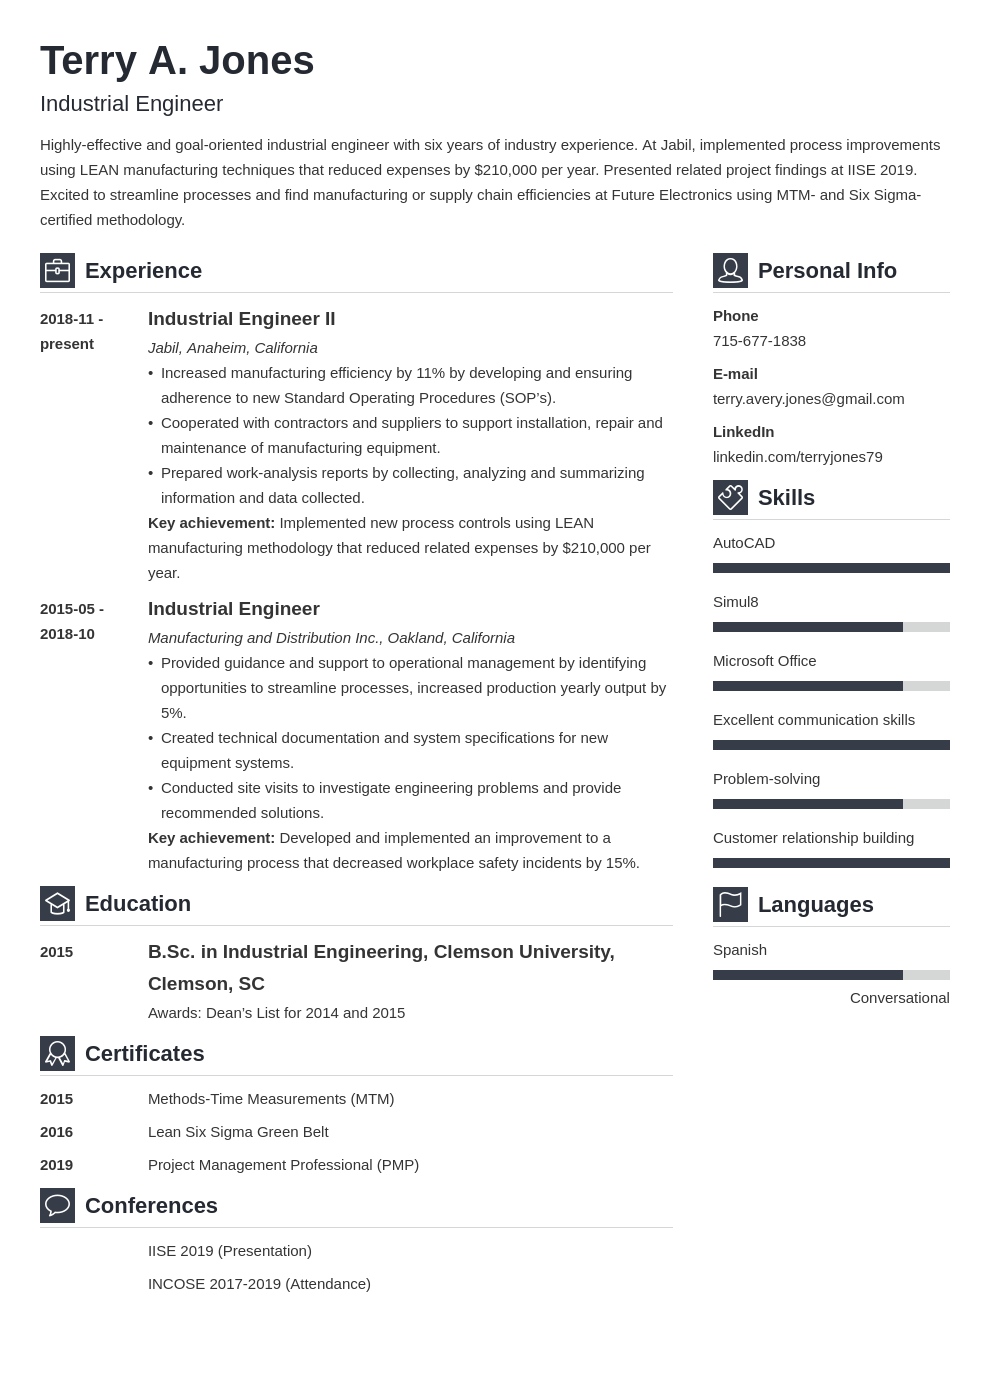 uw-resume-template